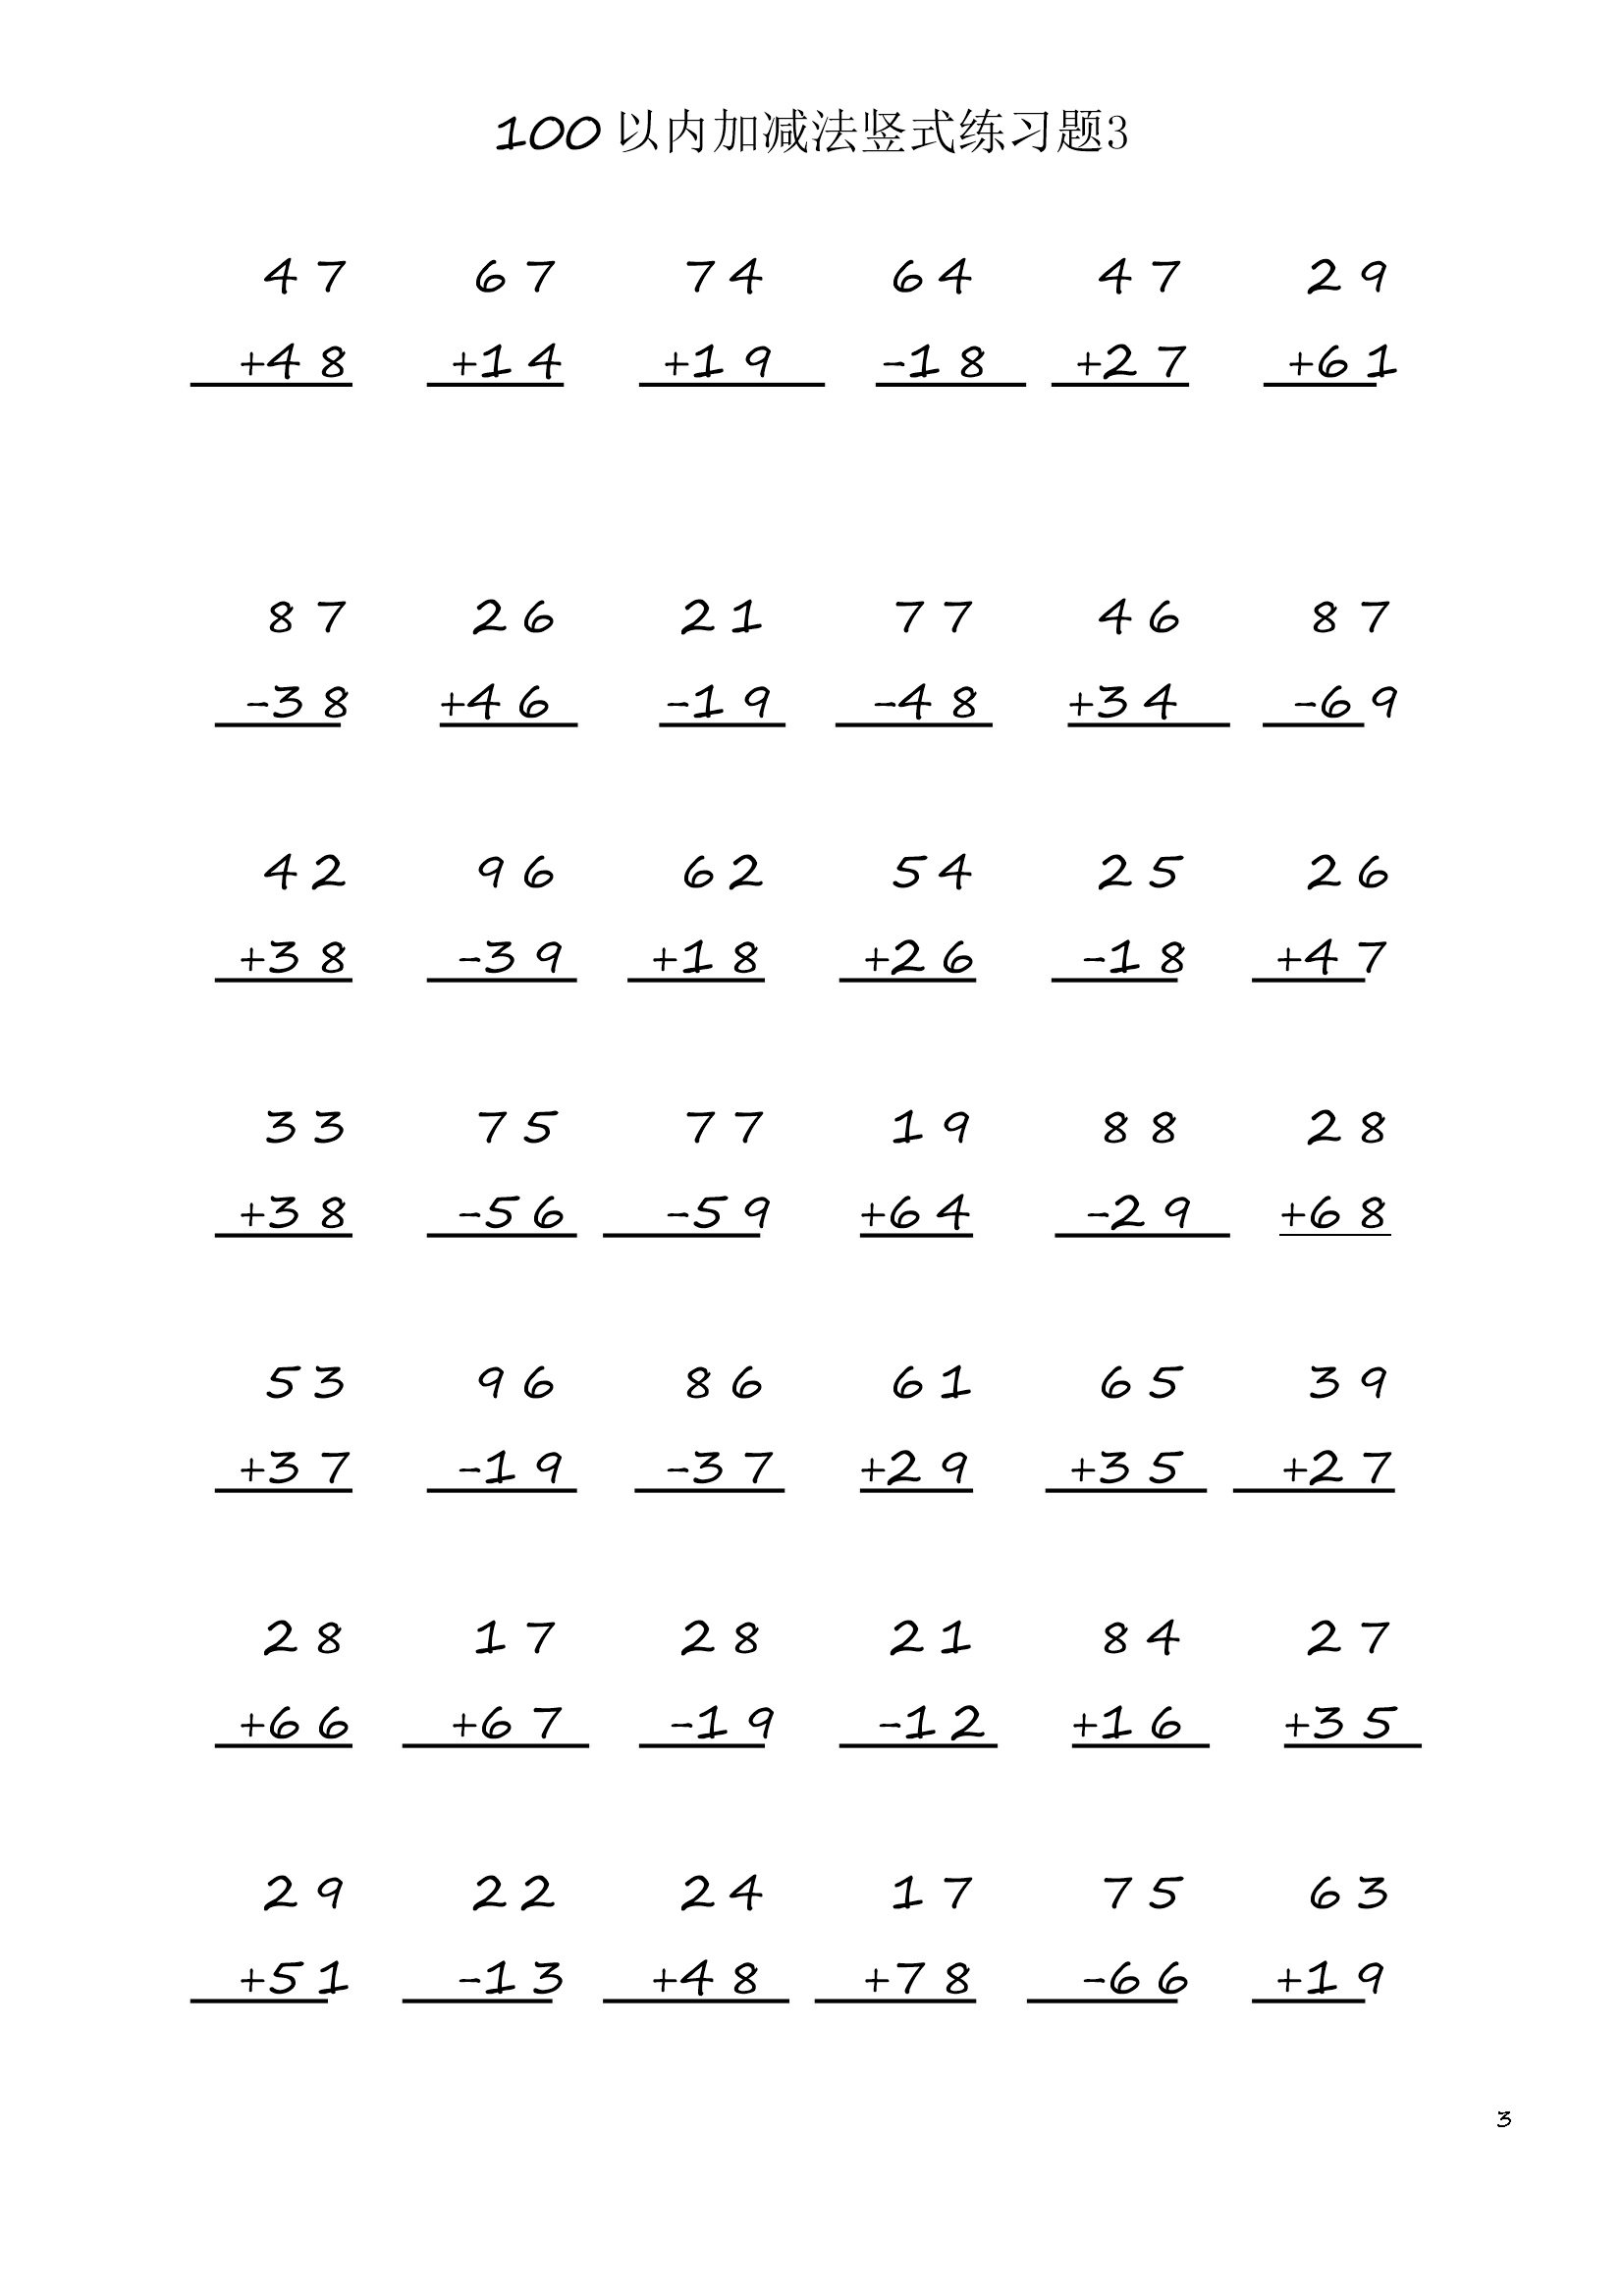 小学数学二年级上册100 以内加减法竖式练习题3 (1页42题)